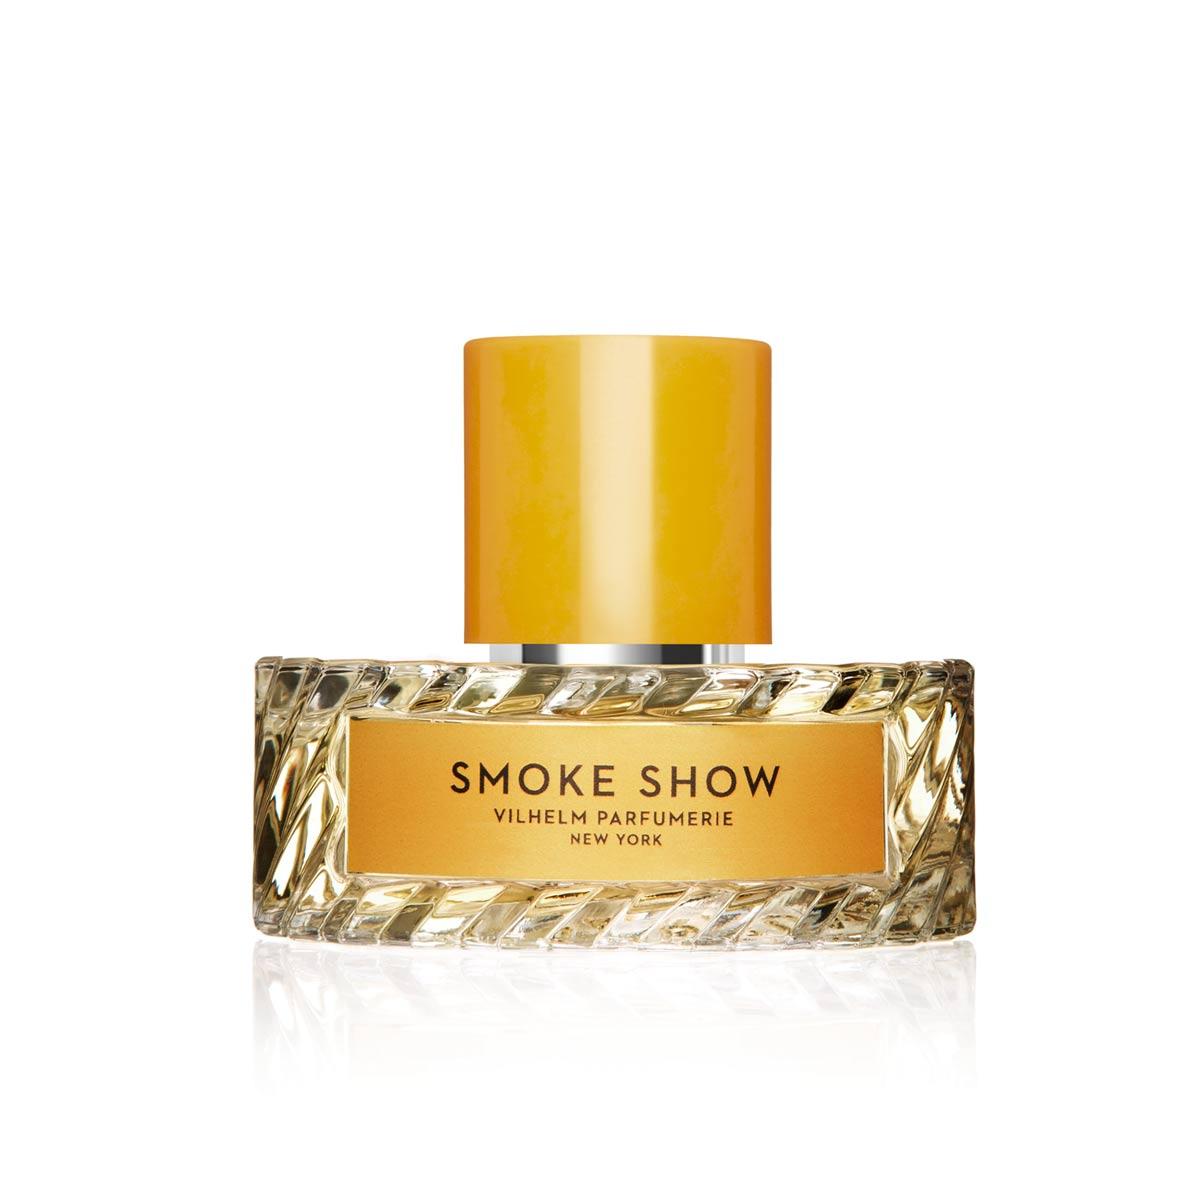 Primary image of Smoke Show EDP